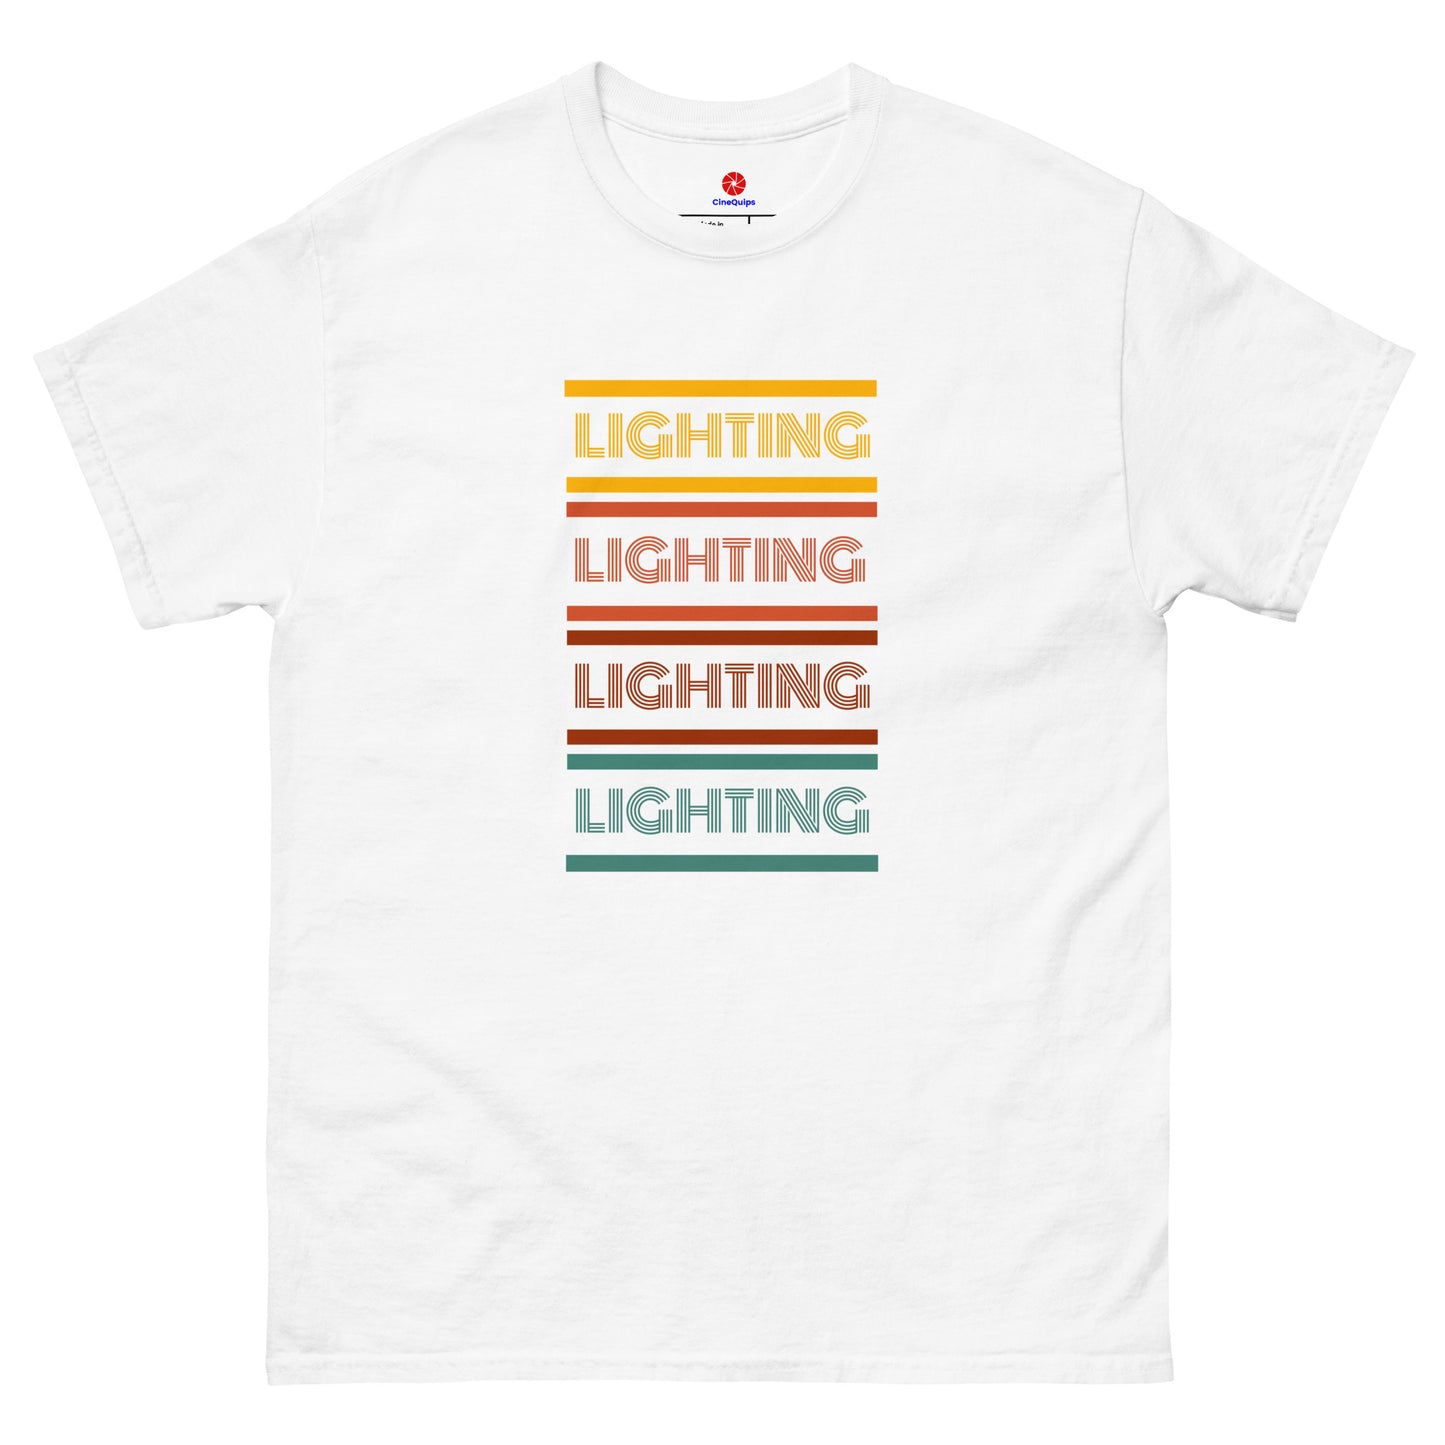 Men's Classic T-Shirt Lighting Retro Series - Multicolor - CineQuips